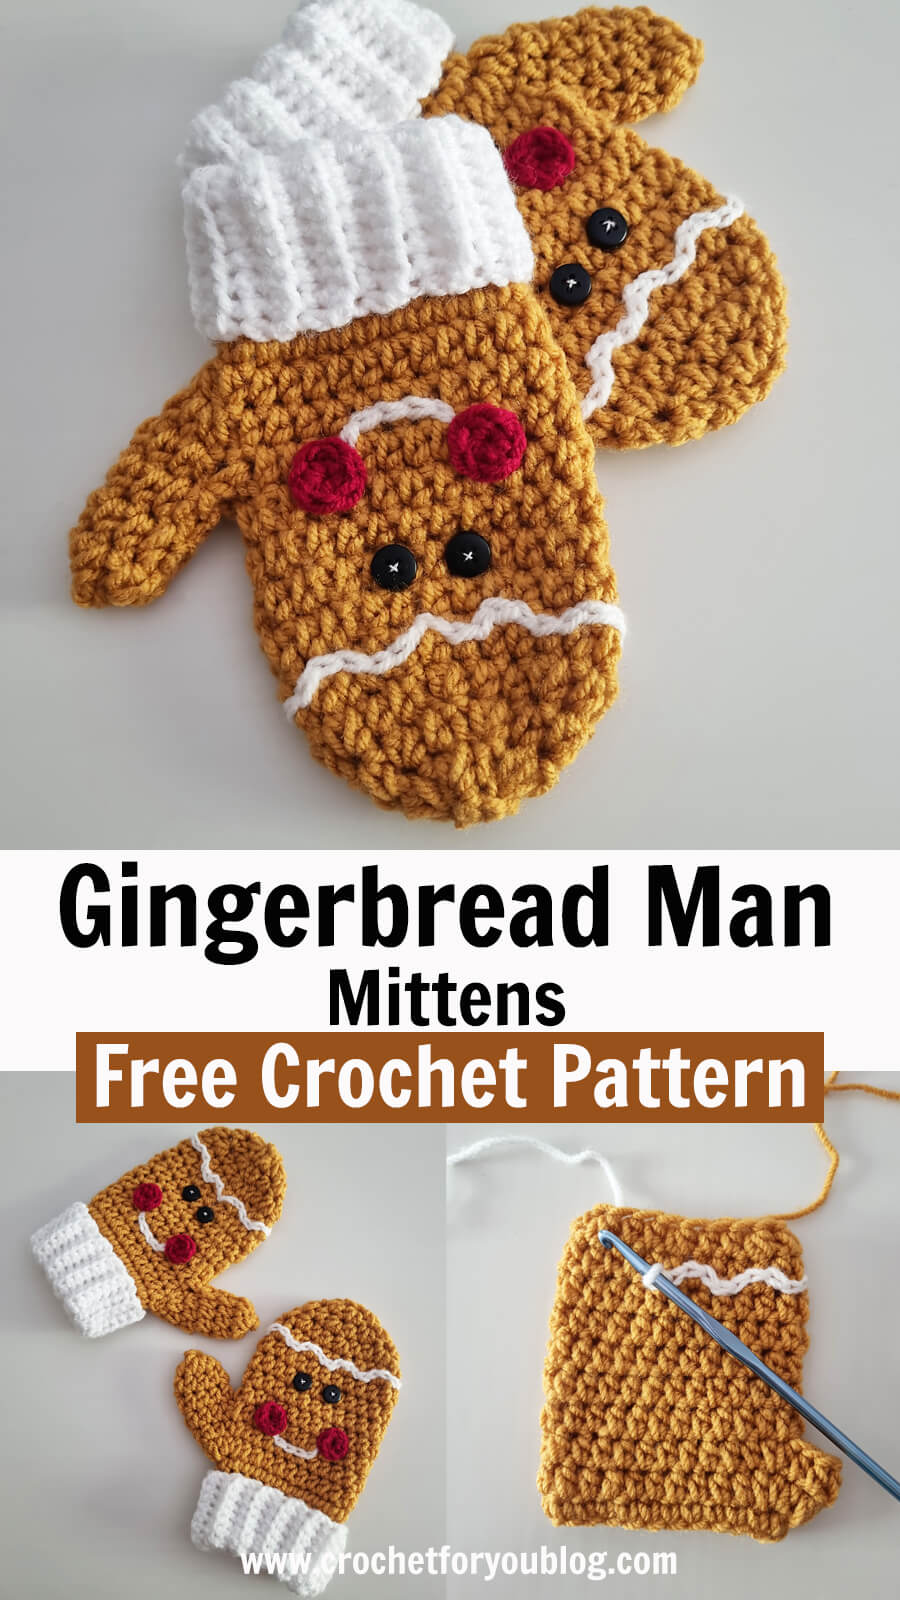 Gingerbread Man Crochet Mittens